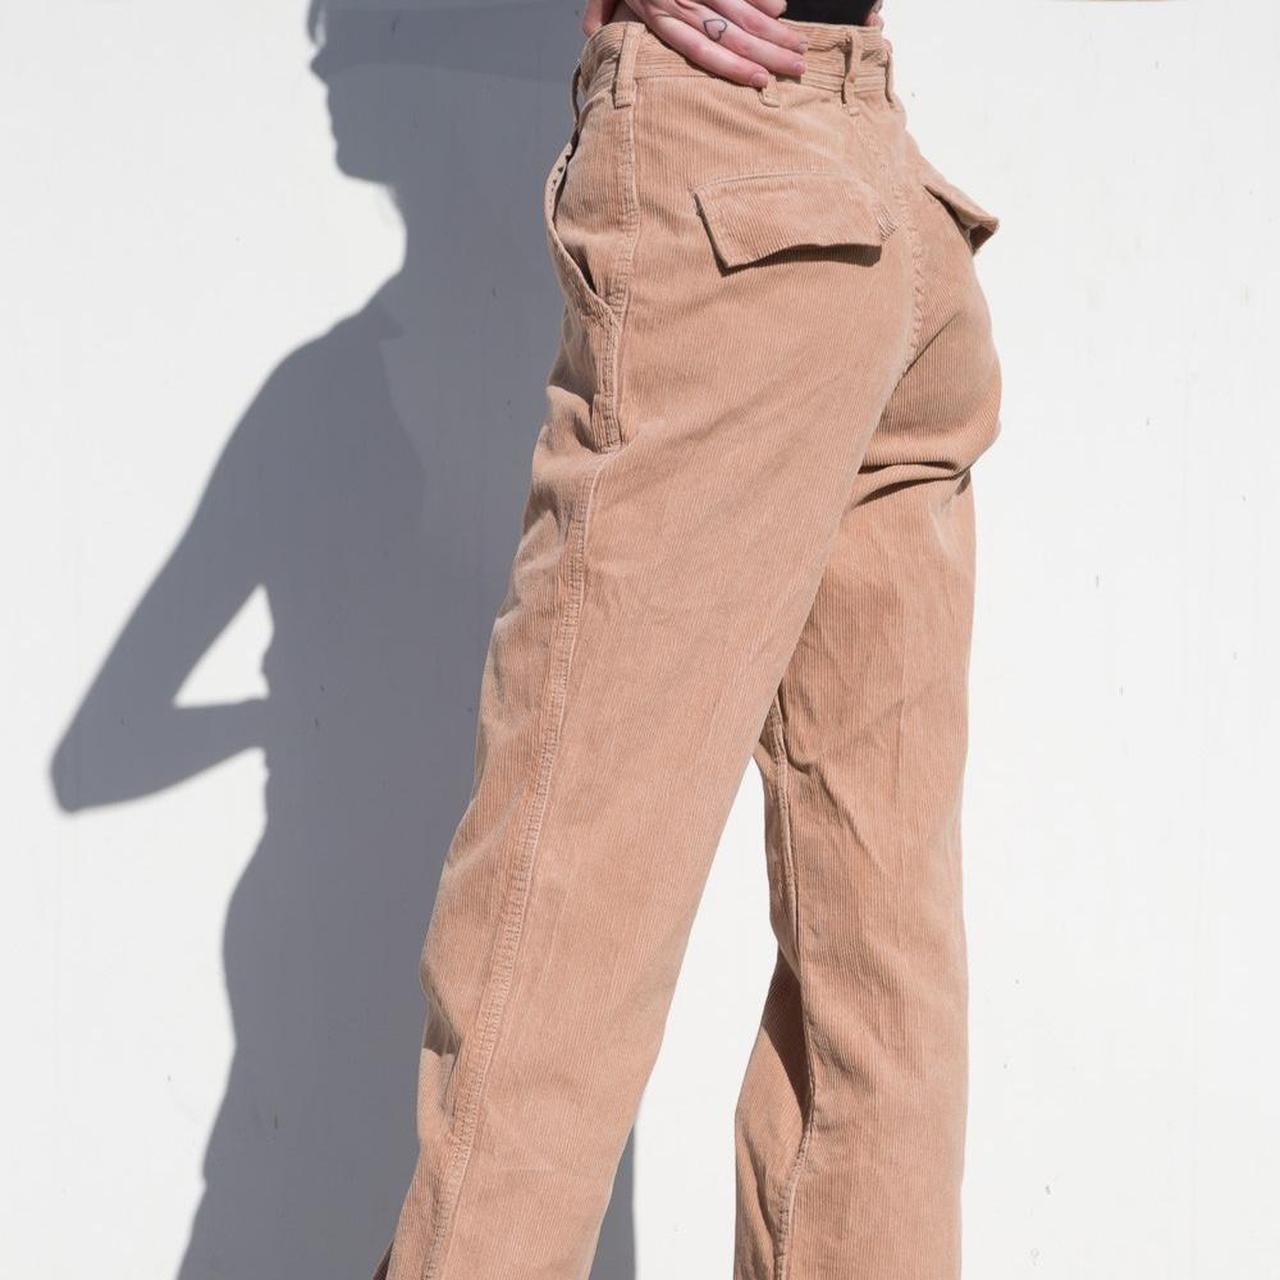 Brandy Melville J. Galt Shanghai Corduroy Pants In Brown Color Sz S